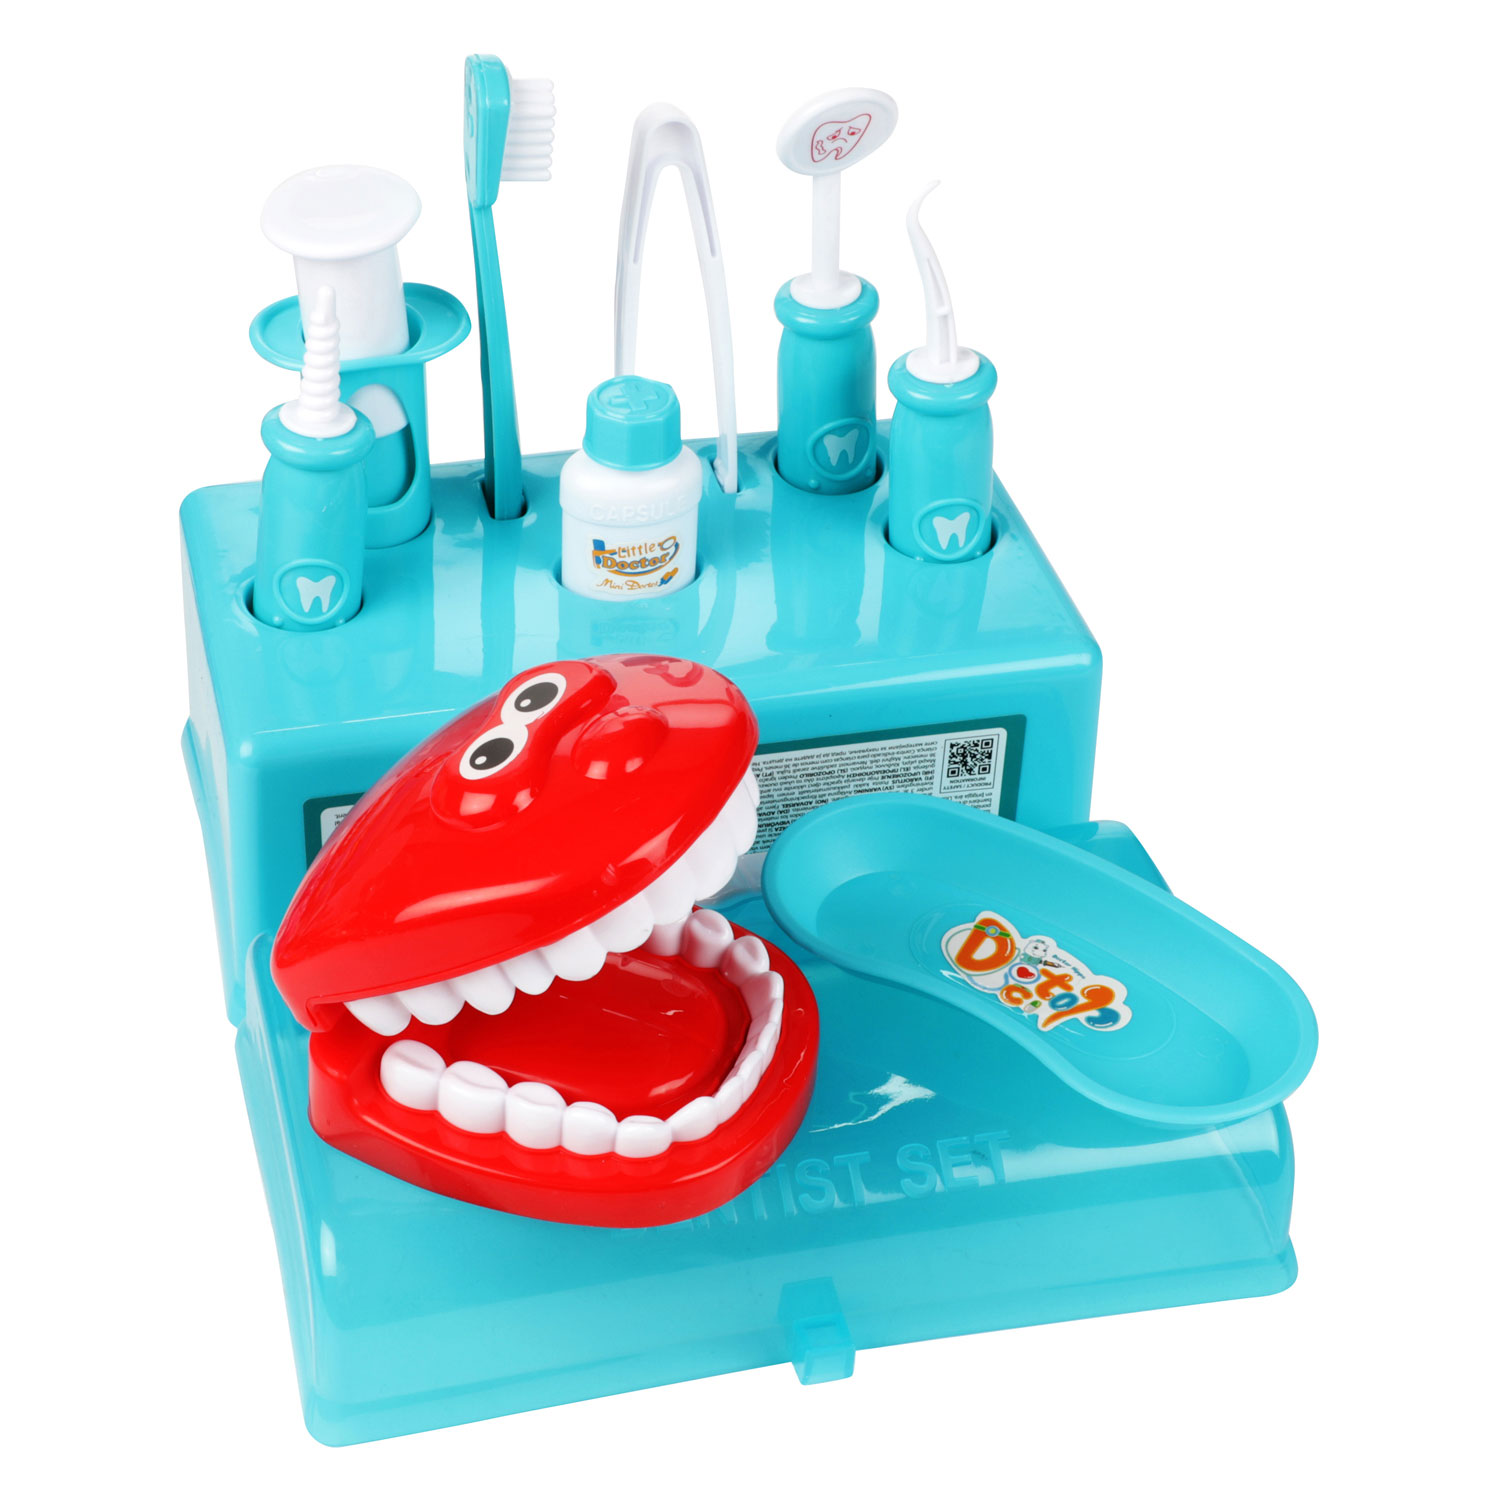 Jouets dentiste pour enfant - Lot de 6 pièces